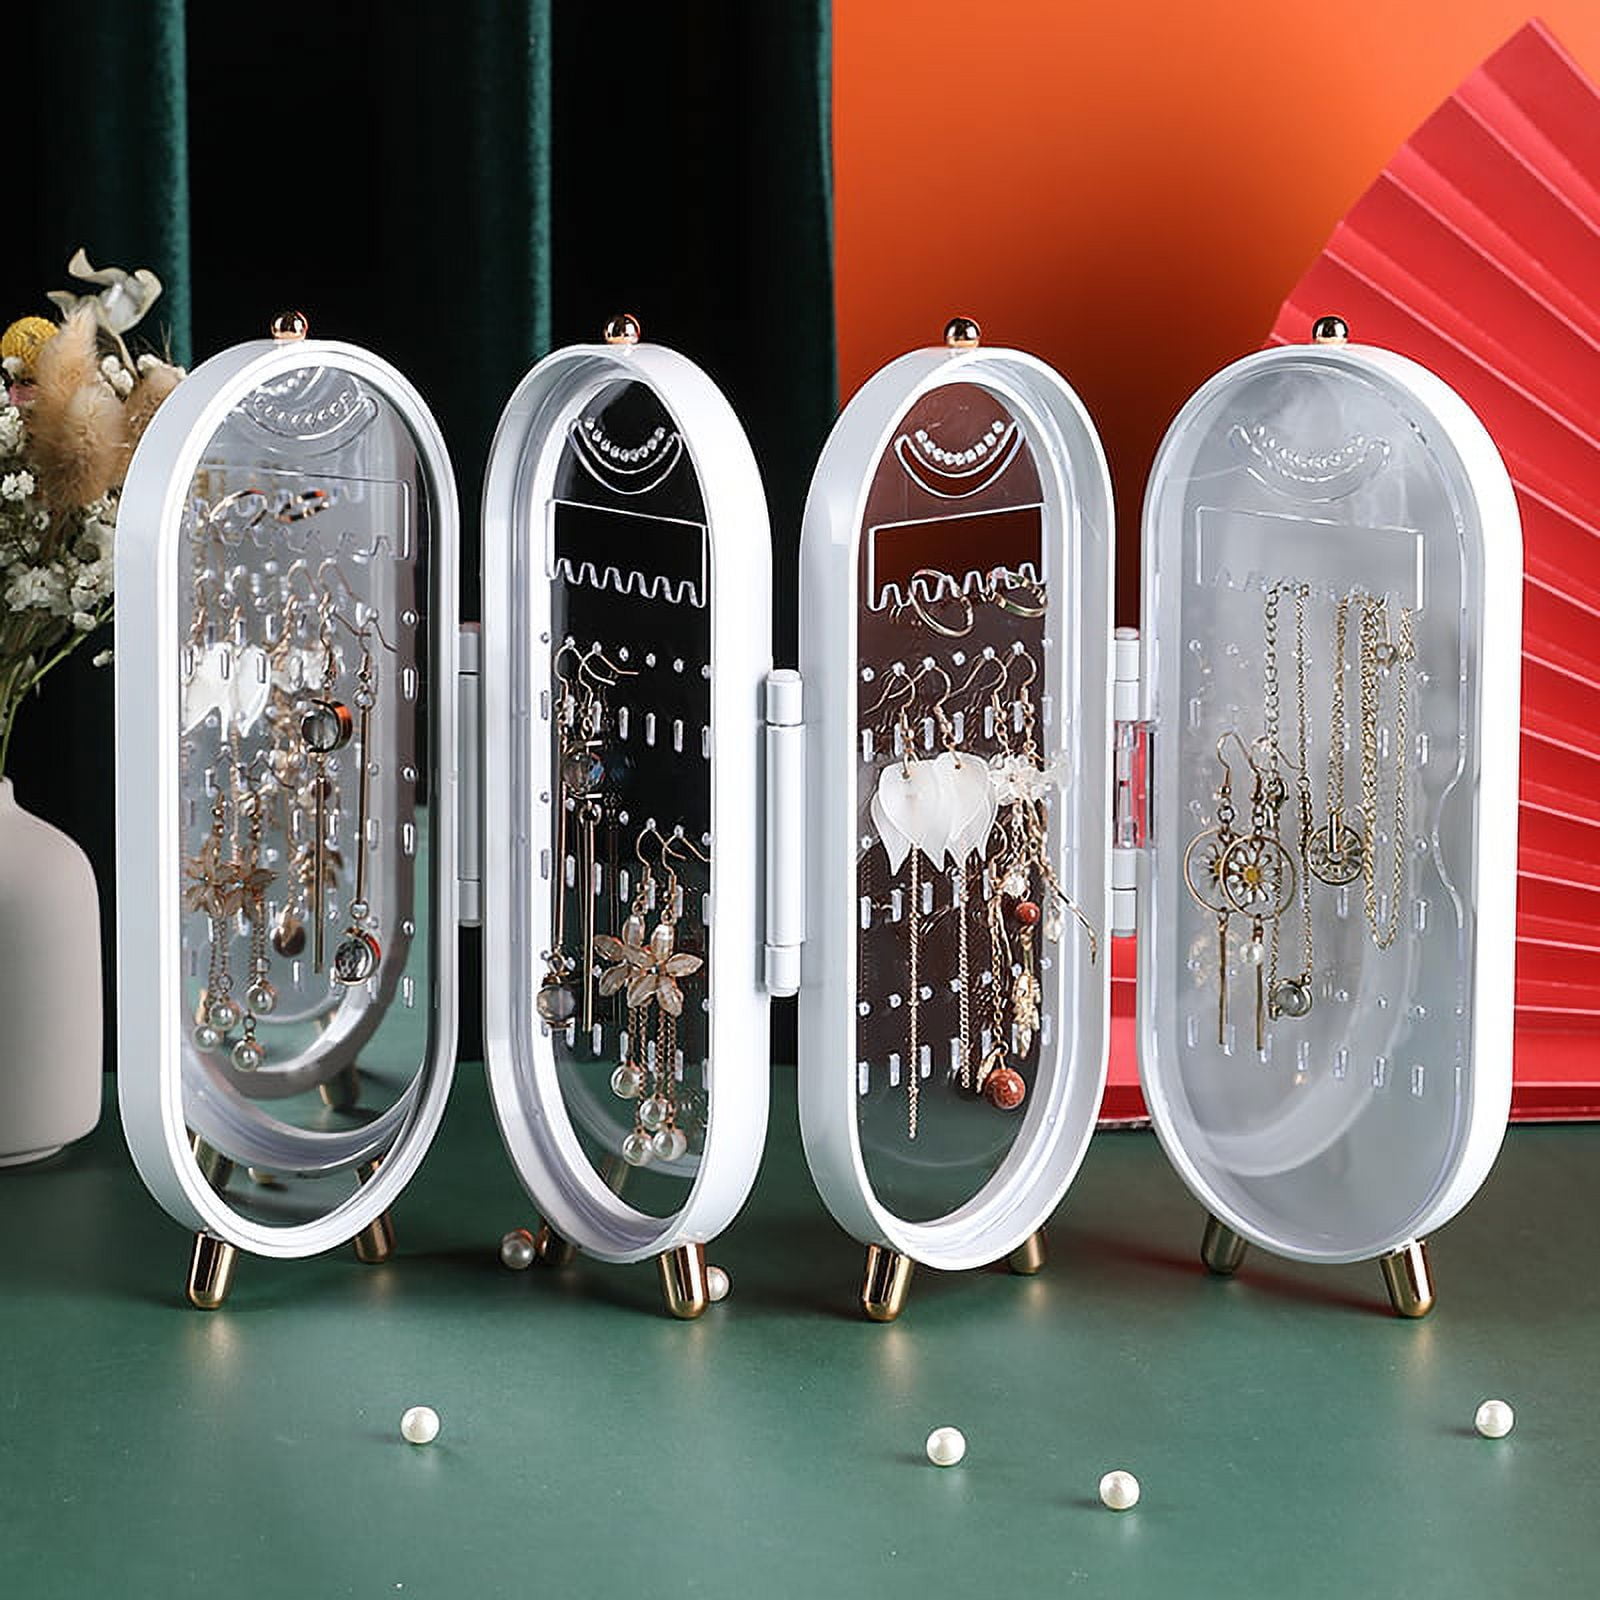 Necklace Jewelry Organizer with Folding Screen Design Acrylic Jewelry Storage Box Holds up Pairs of Earrings white 6c971720 7a96 4732 a21f 671981c61898.765bc7c5c3a99f59e75f17675c2b0307